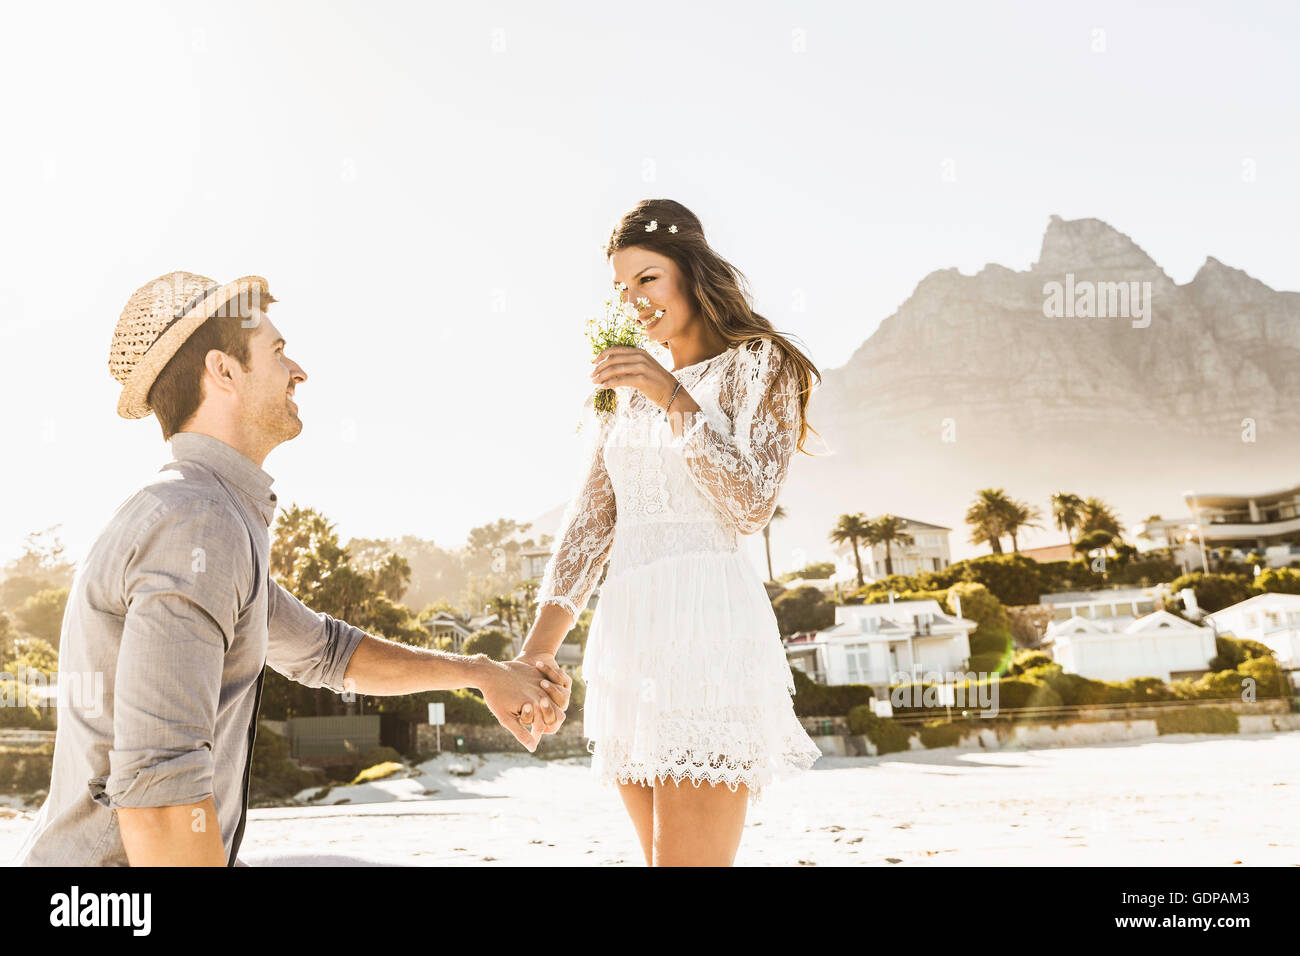 Un uomo su un ginocchio propone la ragazza sulla spiaggia, Cape Town, Sud Africa Foto Stock